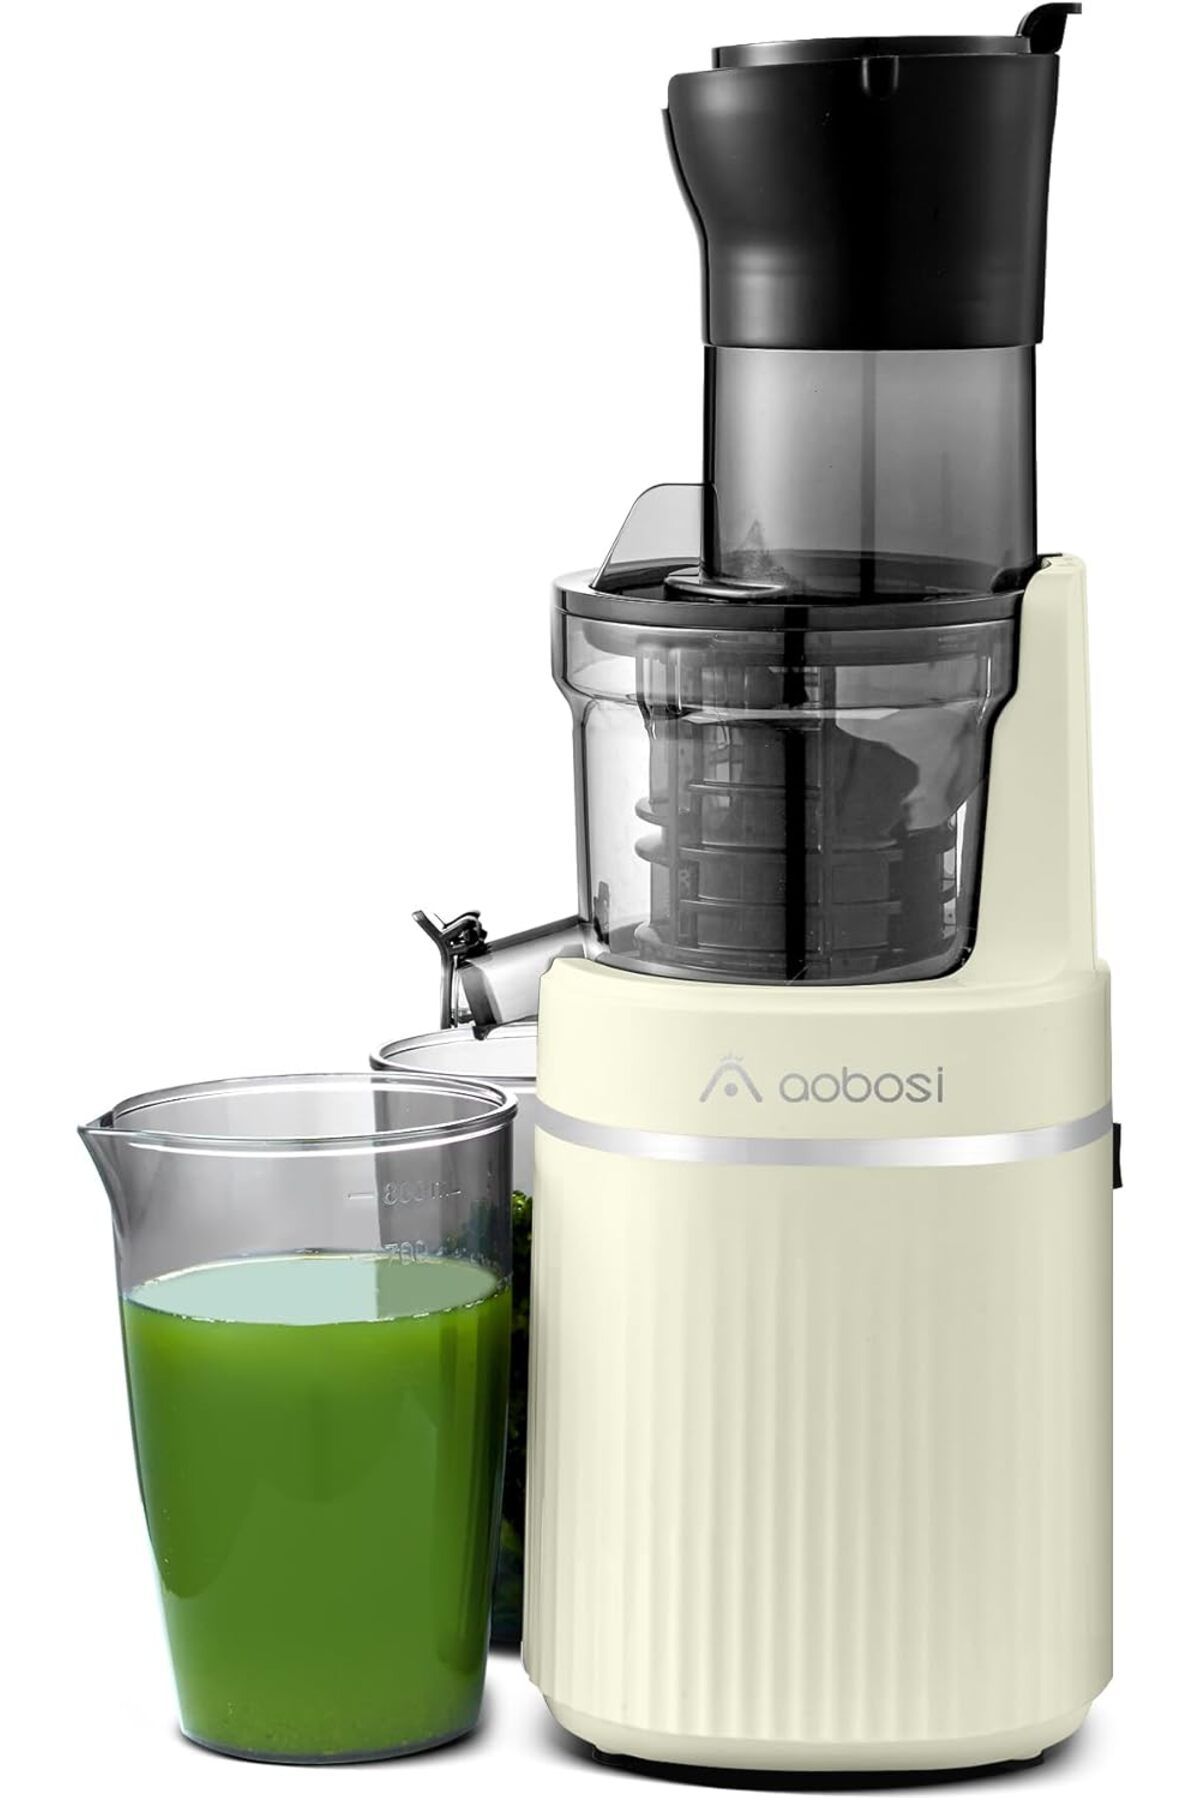 Aobosi Meyve Sıkacağı: BPA İçermez, Elektrikli, 80 mm Açıklık, Geri Çalışma Fonksiyonlu, Sessiz Motor